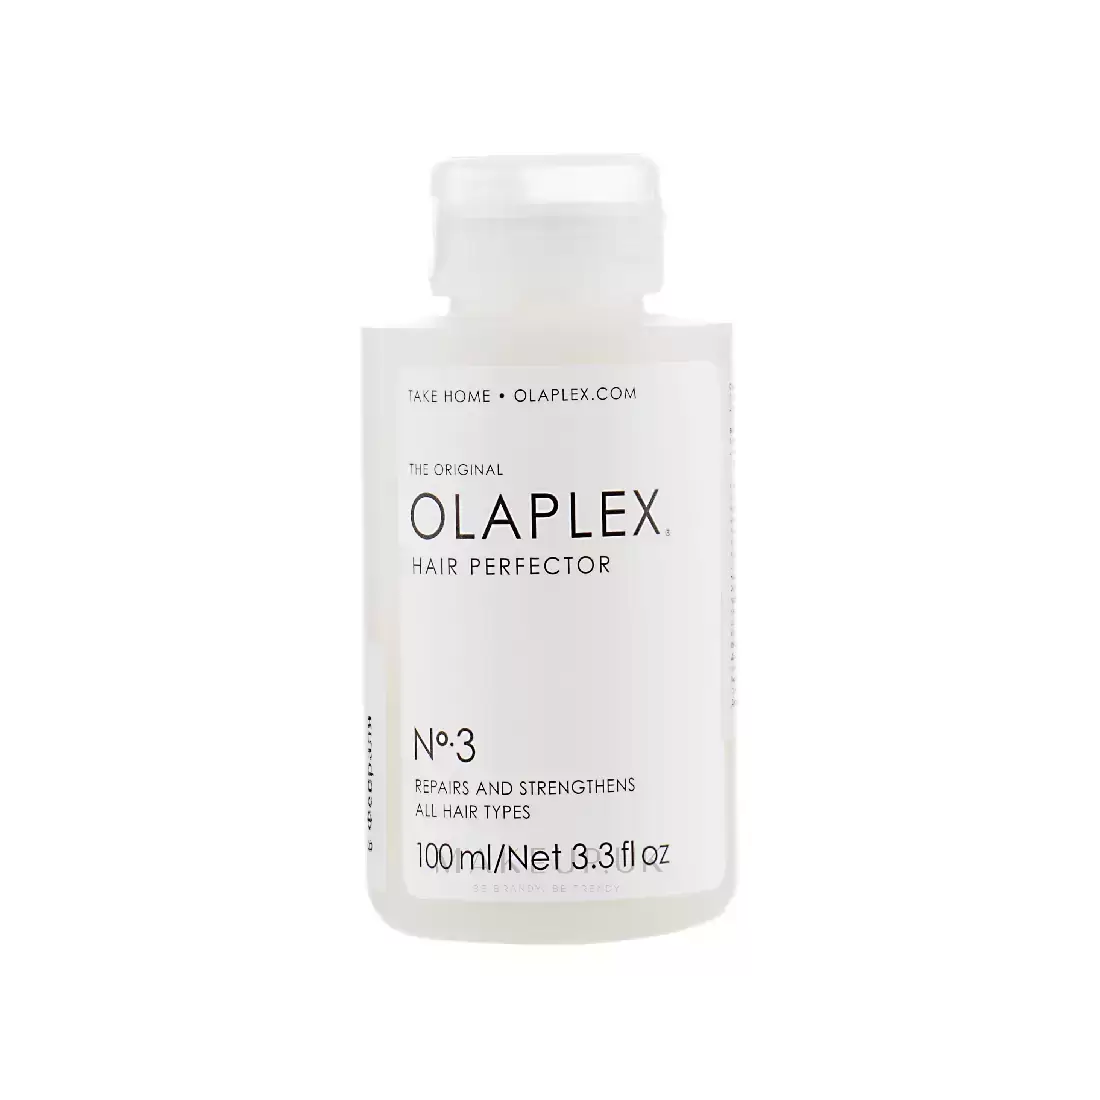 کرم ترمیم کننده مو اولاپلکس شماره 3-اولاپلکس شماره 3-کرم شماره سه اولاپلکس-پرفکتور اولاپلکس شماره 3-کرم ترمیم کننده مو اولاپلکس-Olaplex - No. 3 Hair Repair Perfector